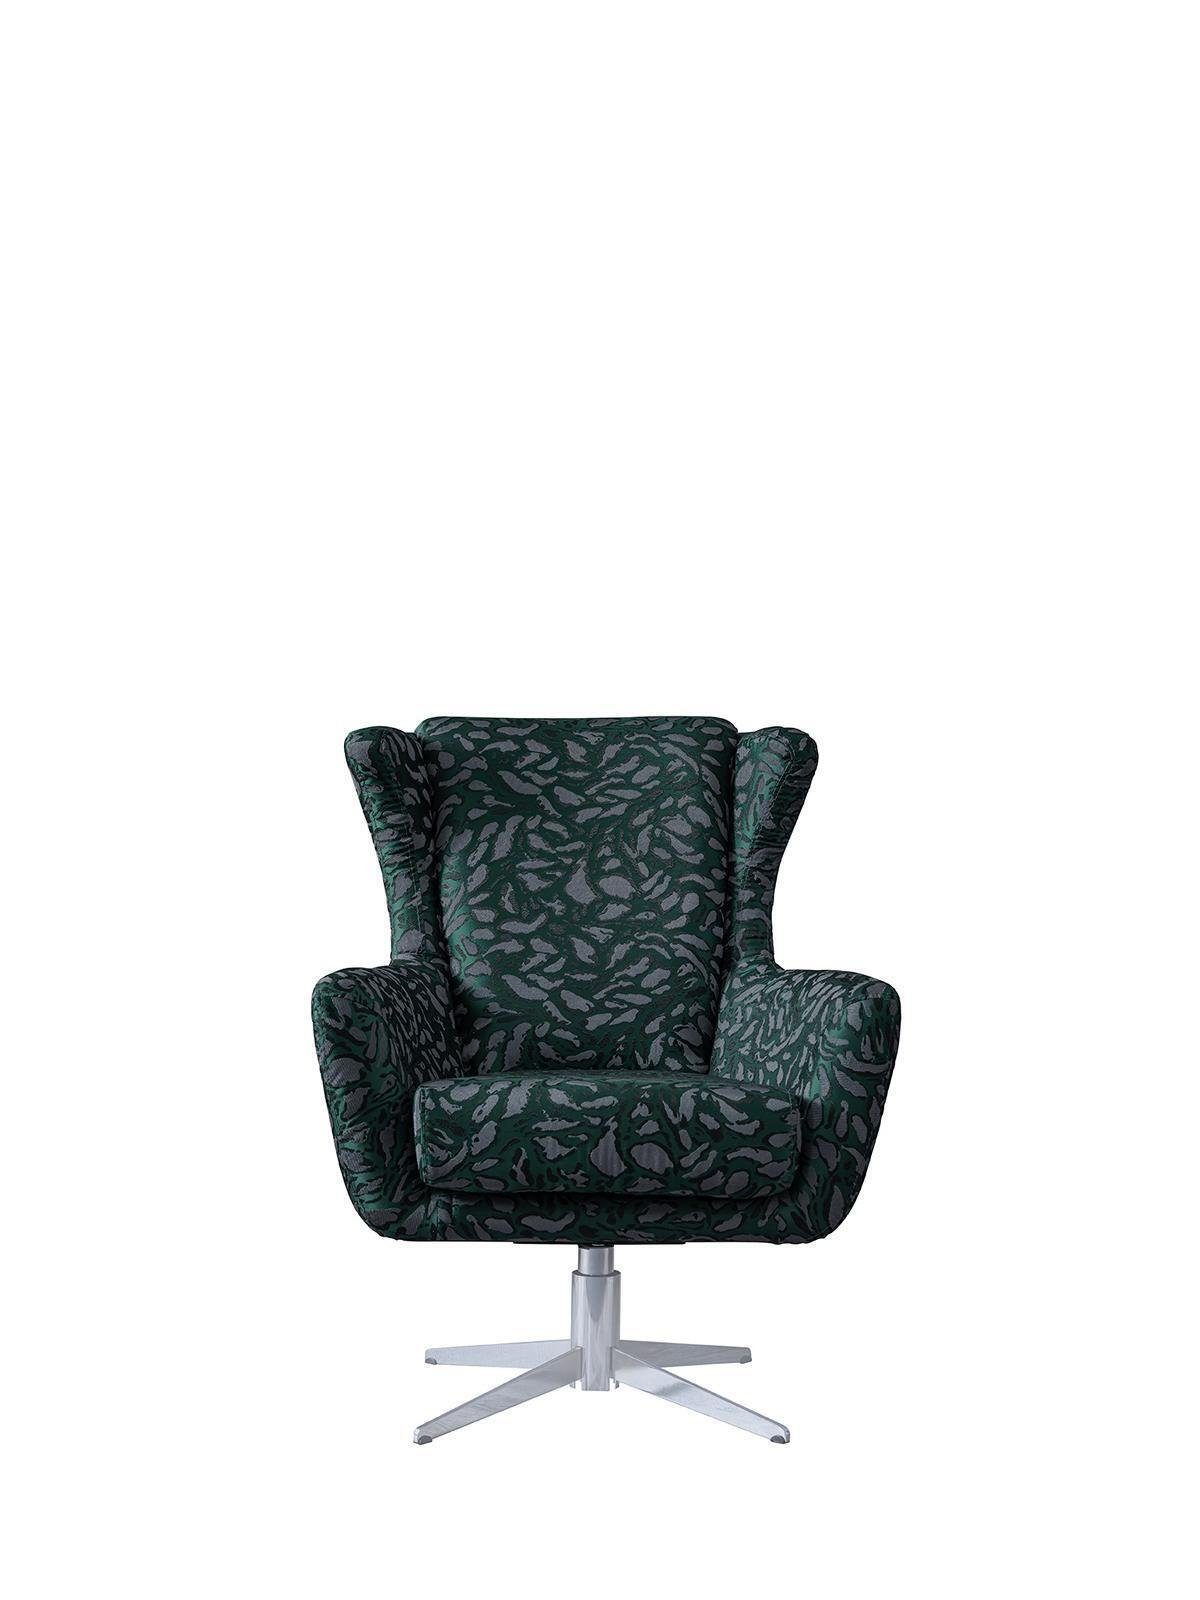 JVmoebel Armlehnstuhl Wunderschöner grüner Stuhl einer Blume zum Entspannen